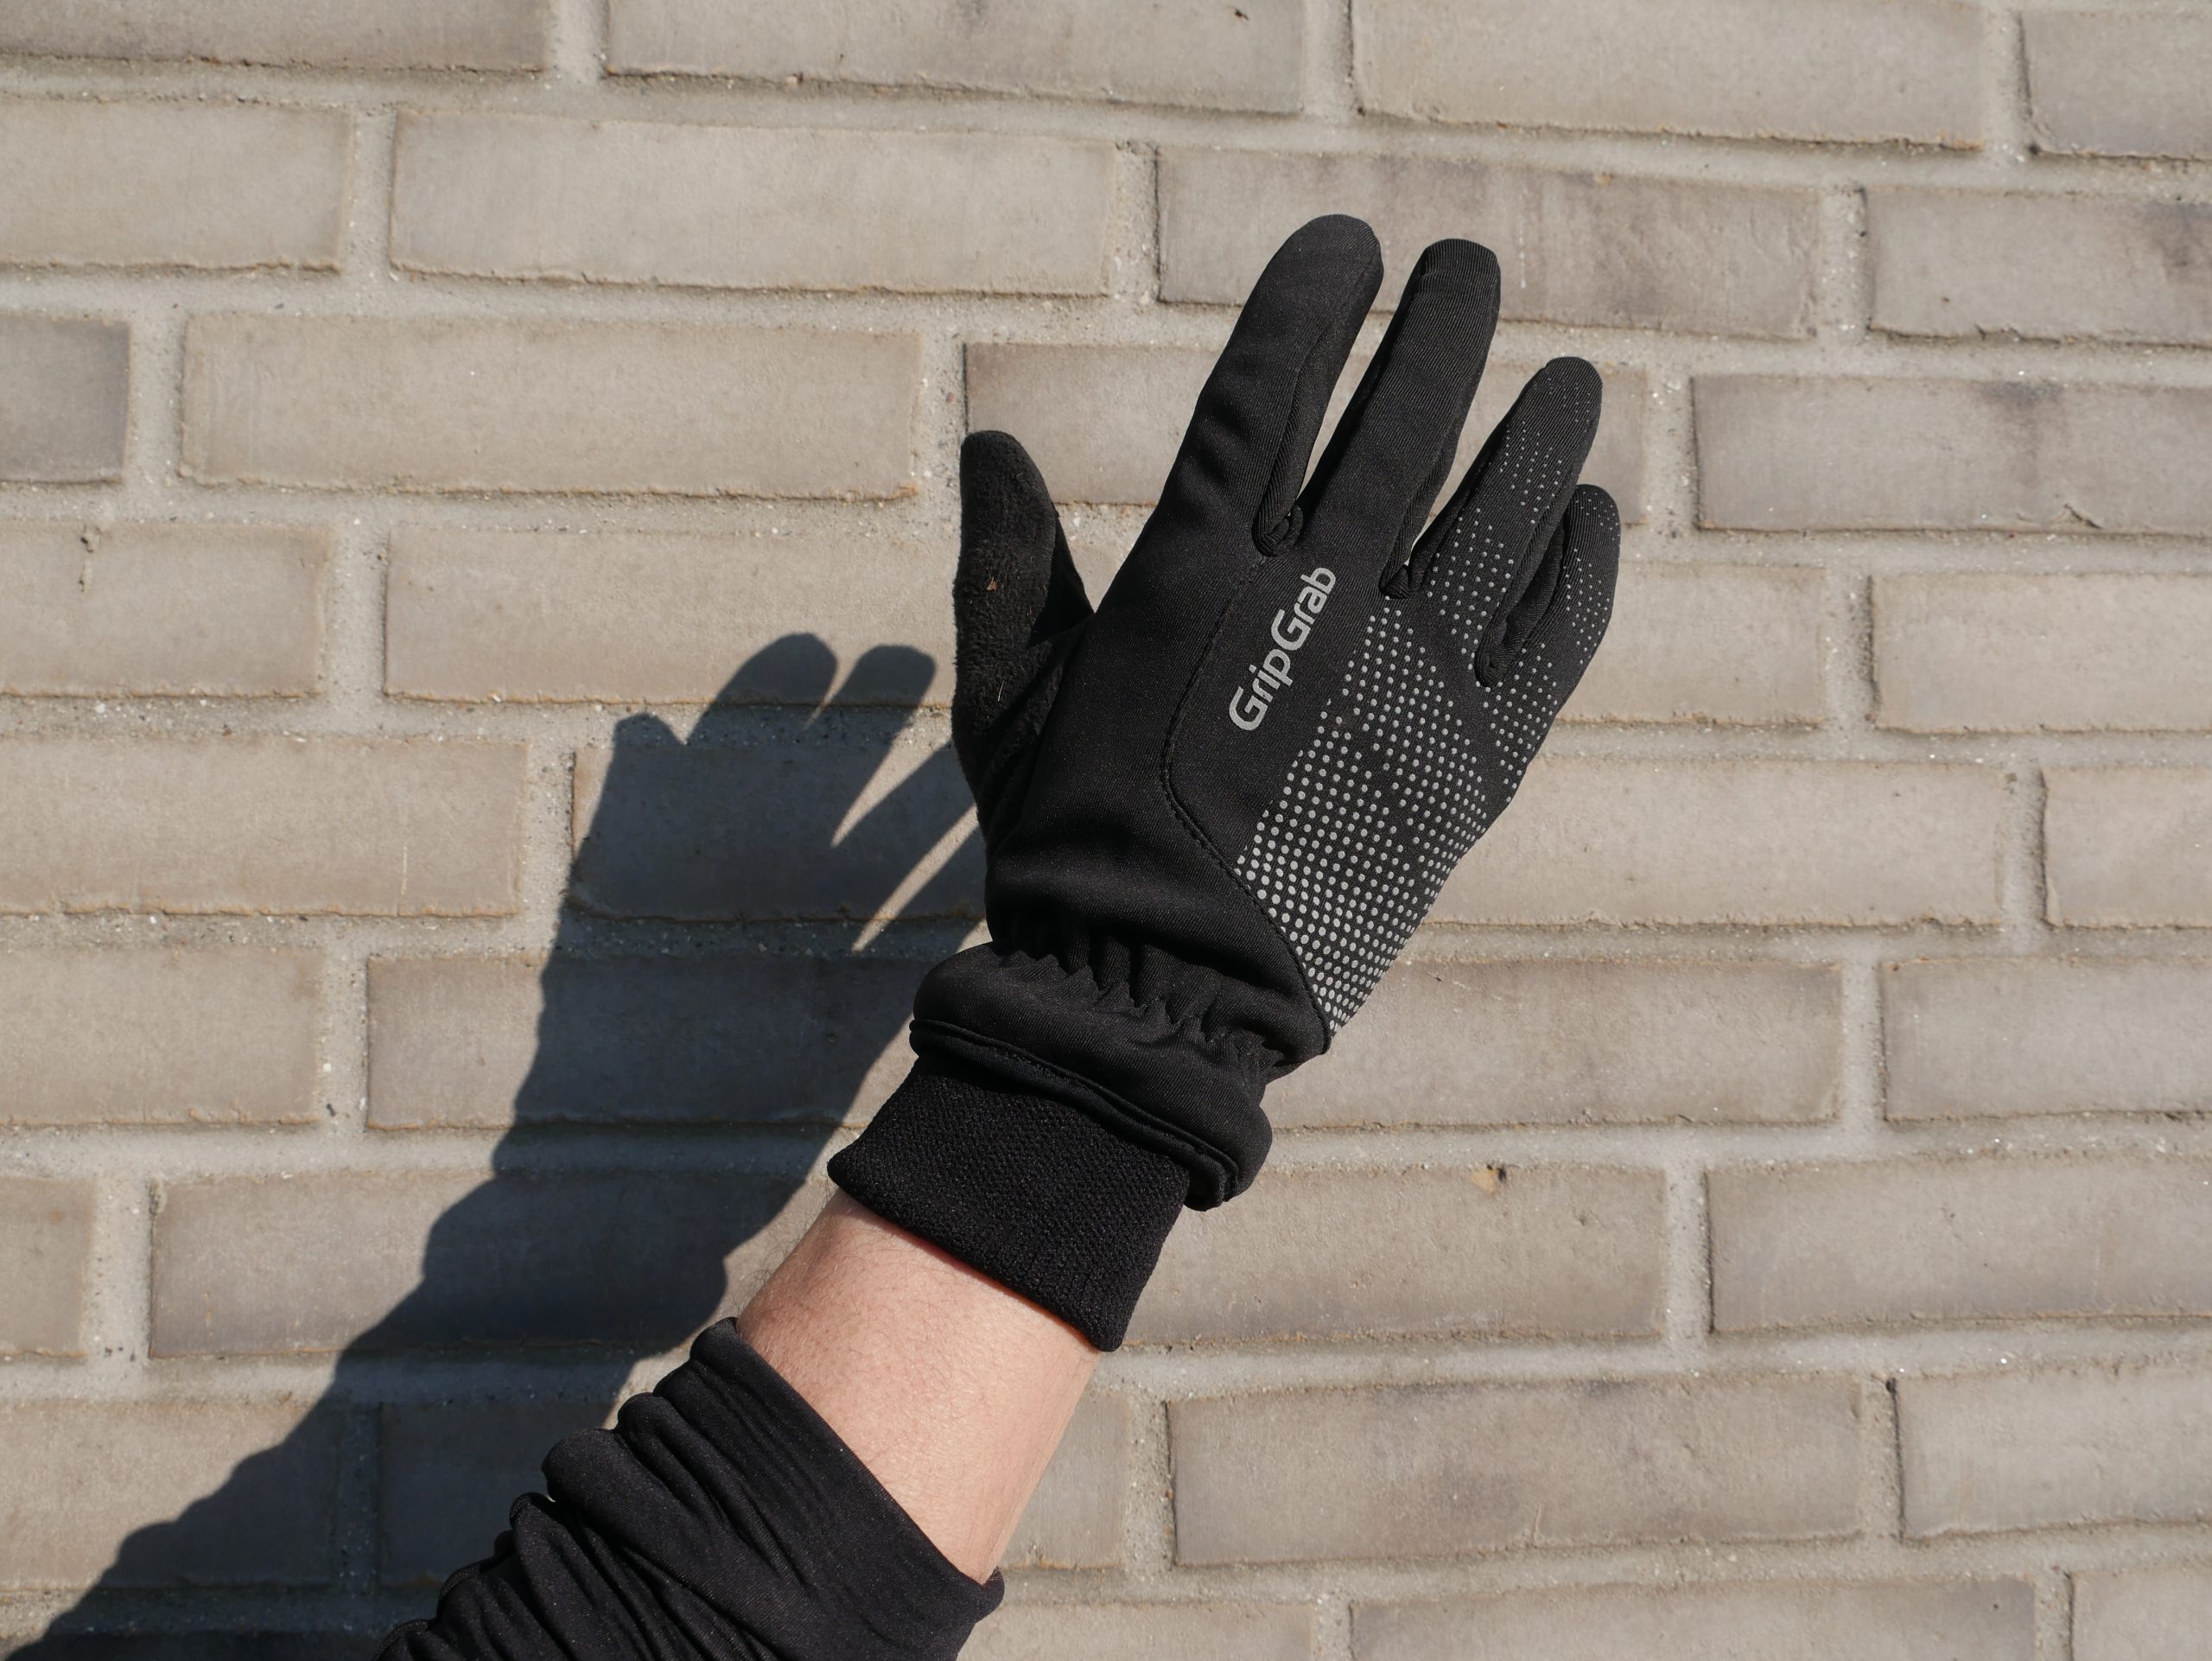 Natura Datum oprejst Test: GripGrab Ride Winter handsker | CykelStart.dk